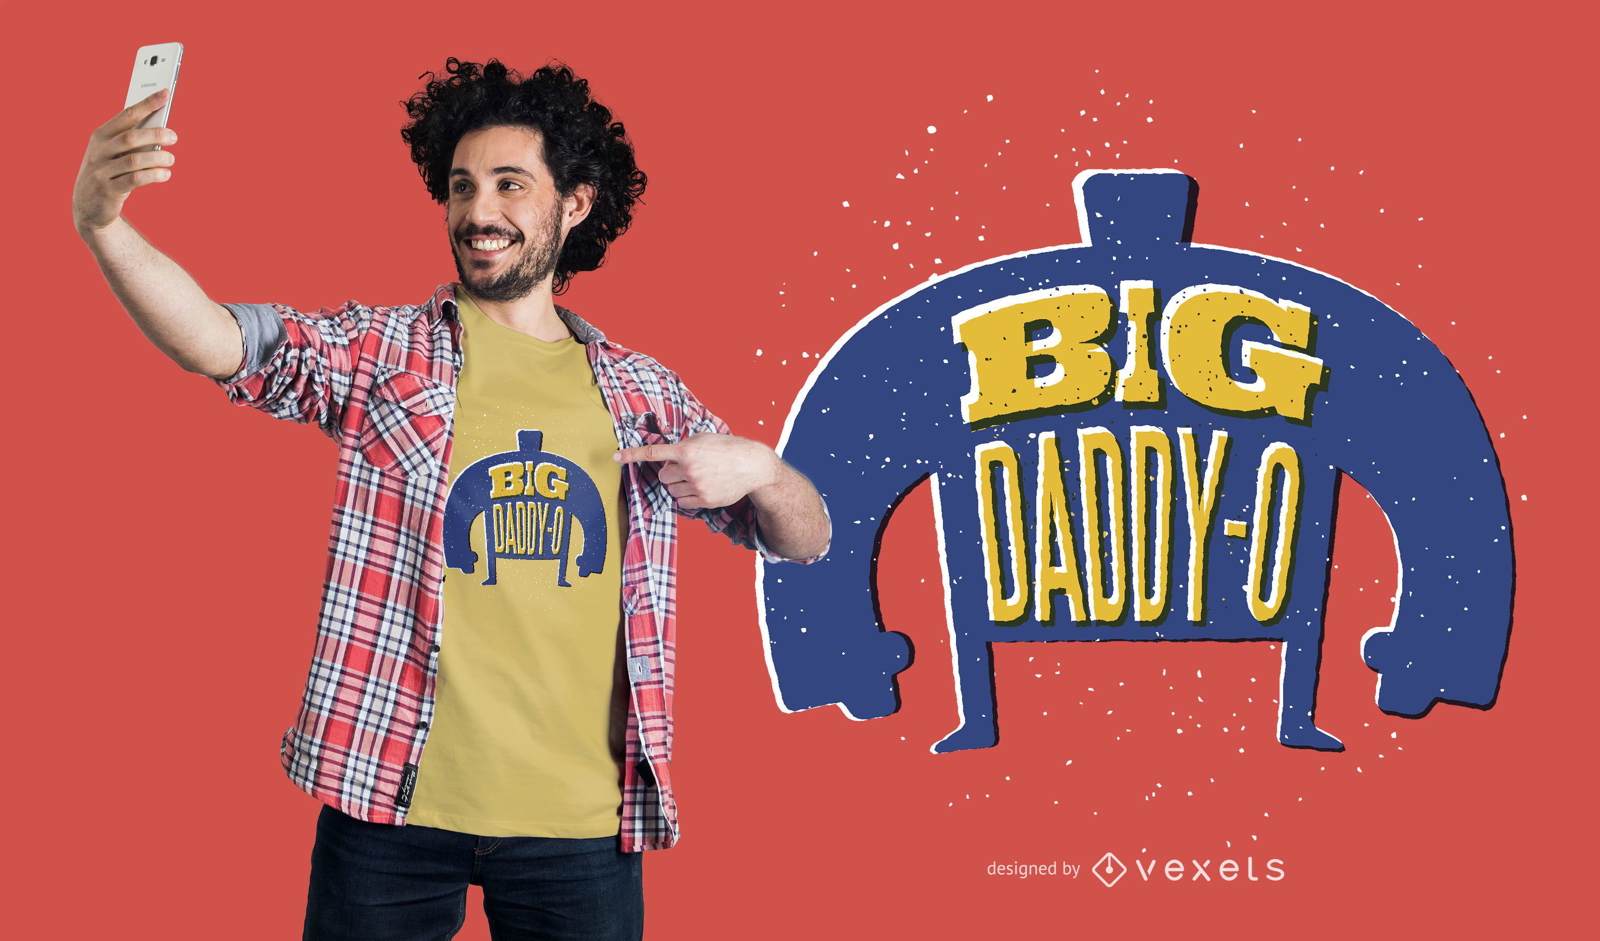 Big daddy t-shirt design